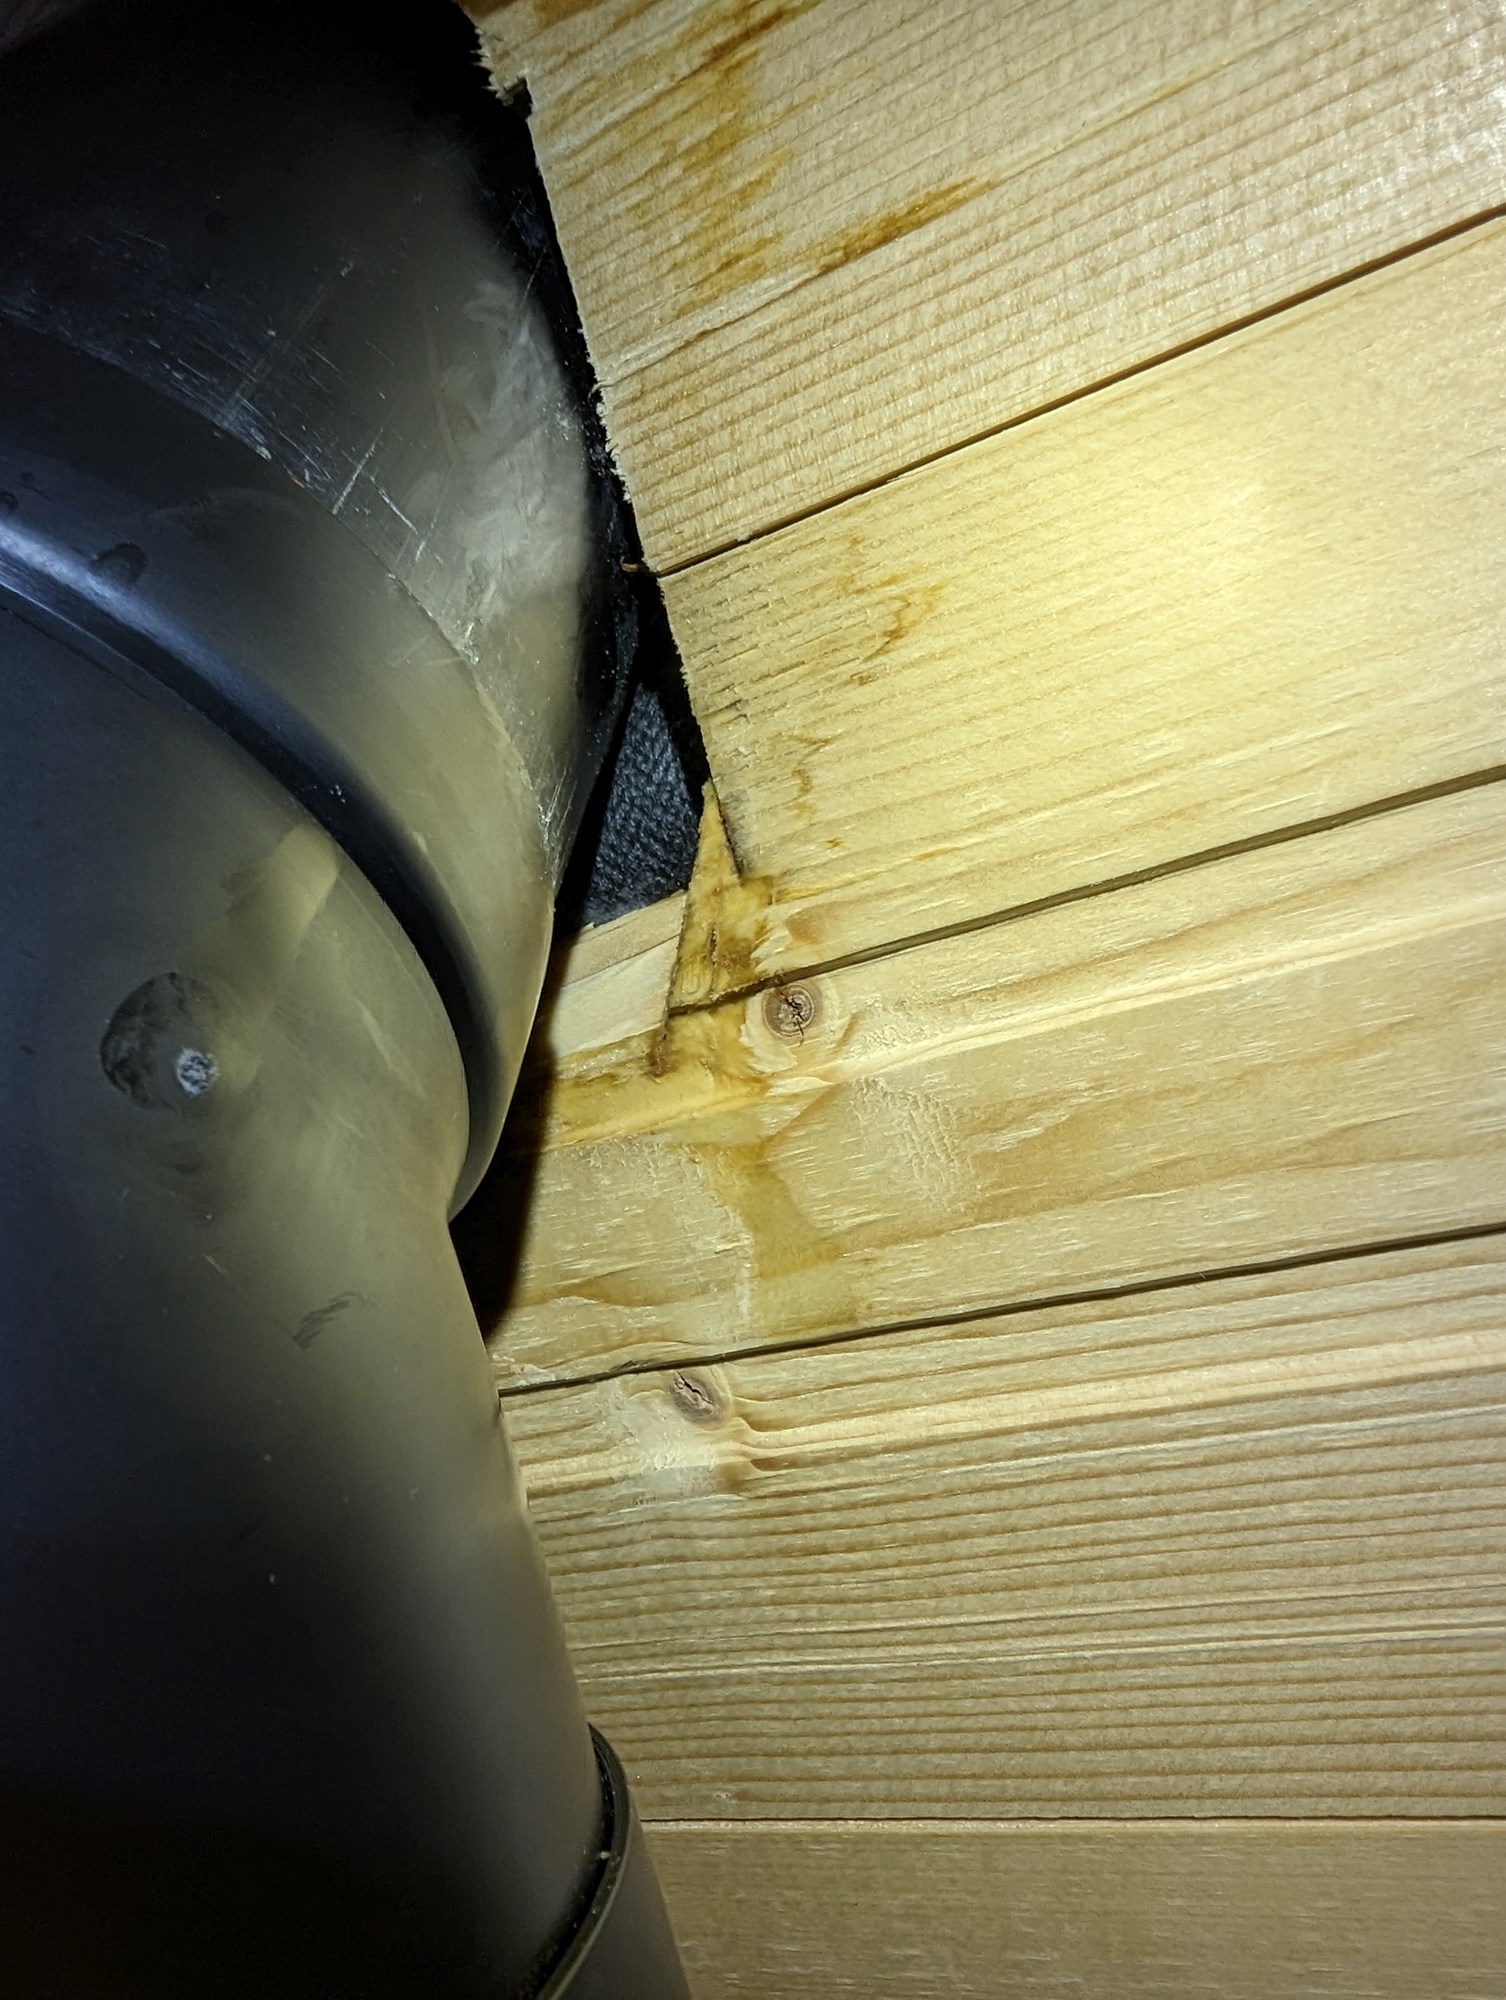 Hvordan løse kondensering og frysing på radon- og kloakkrør som går ut av taket? -  - trsdm